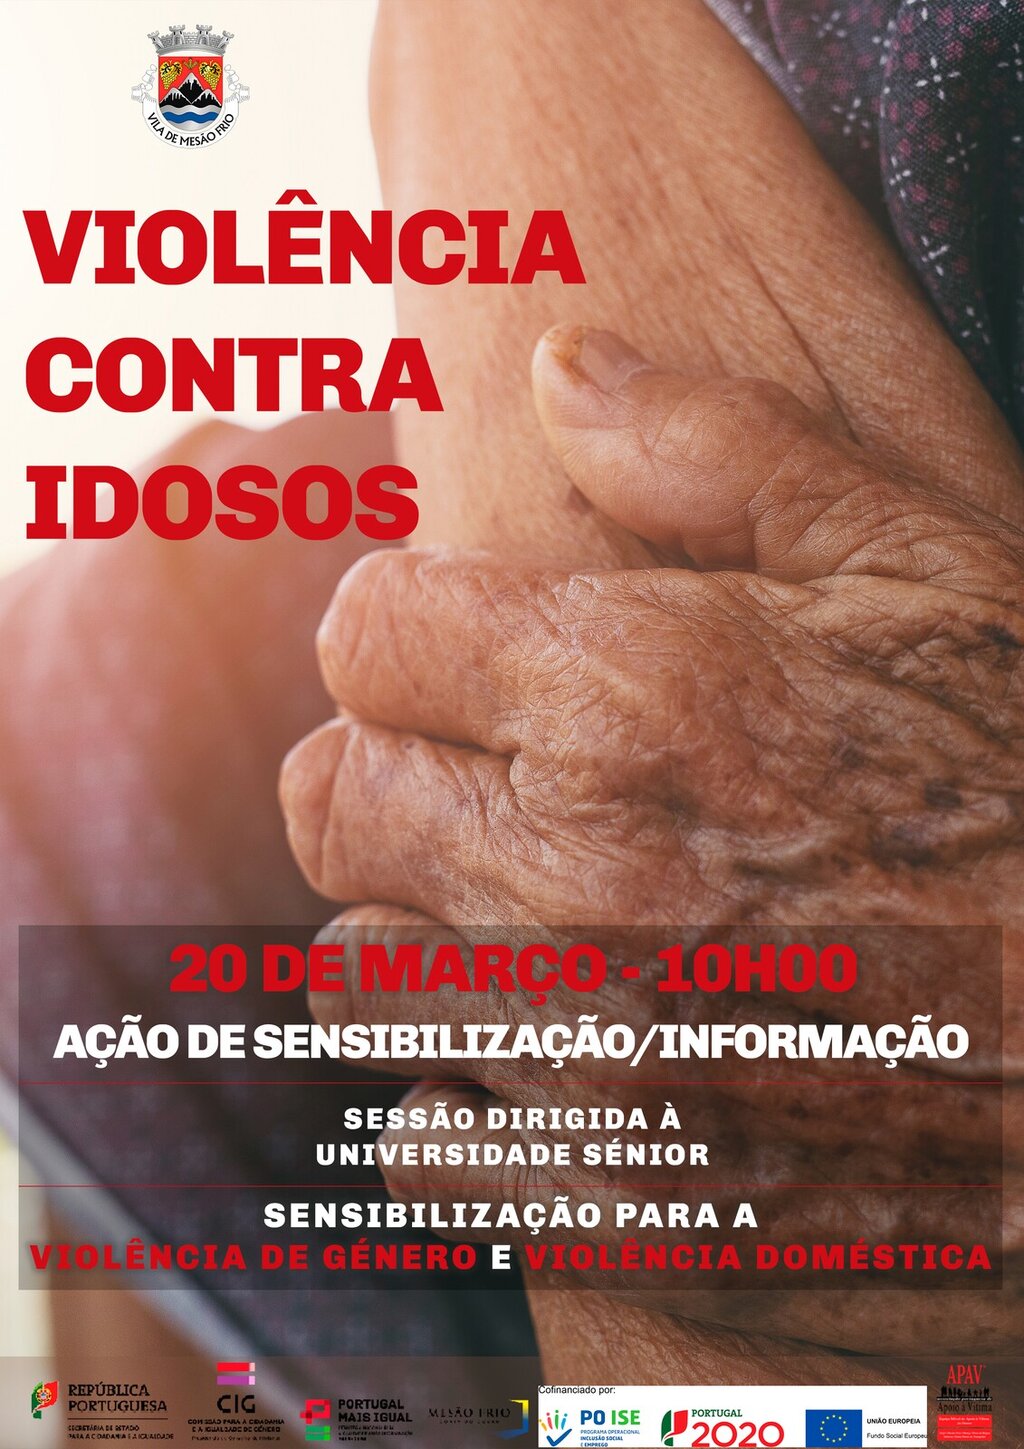 Ação de sensibilização sobre violência nos idosos